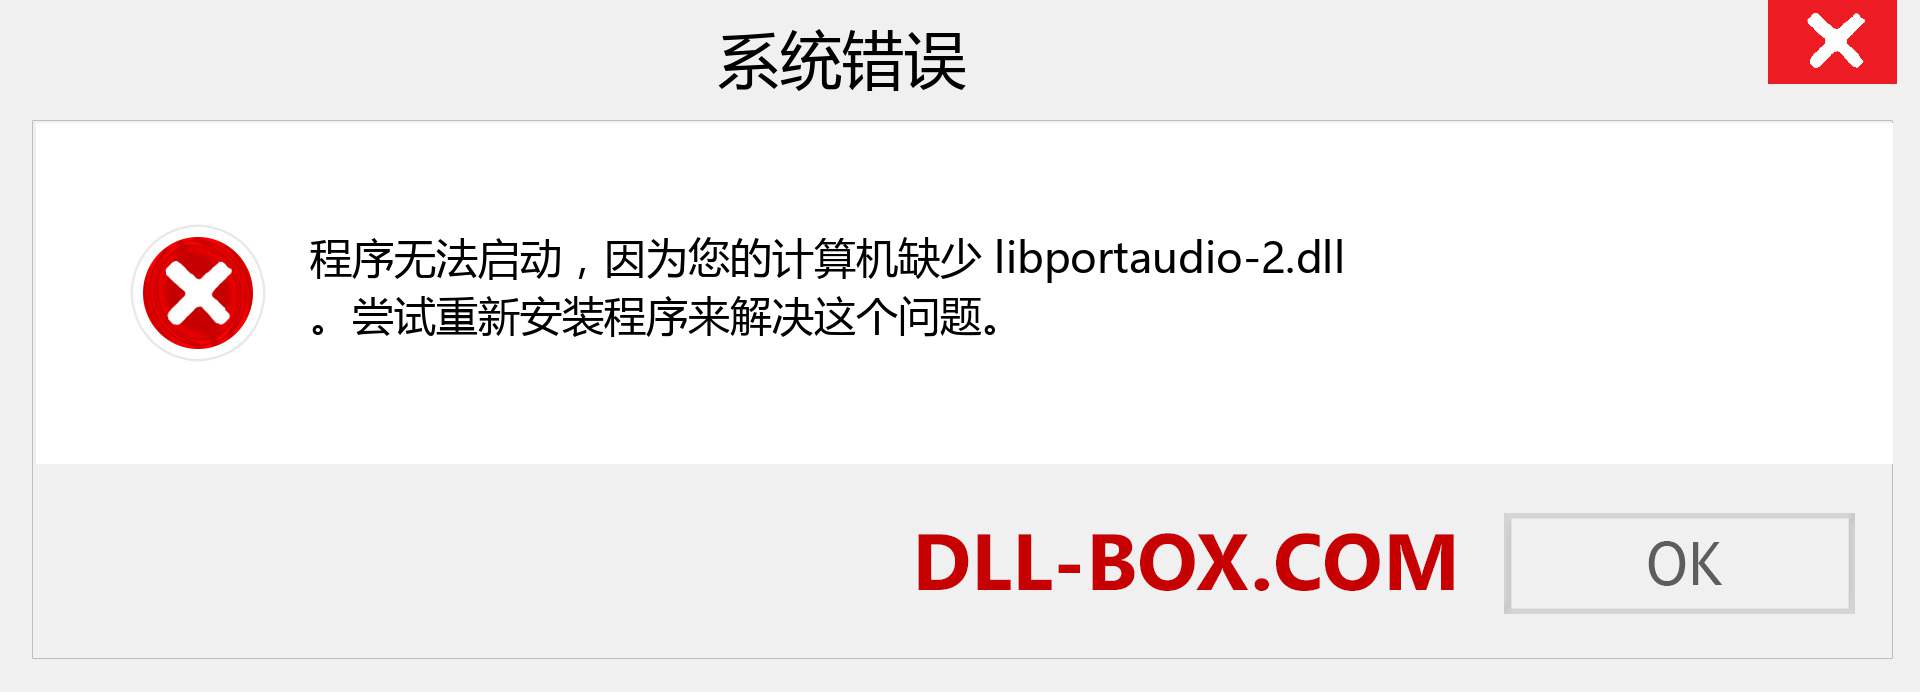 libportaudio-2.dll 文件丢失？。 适用于 Windows 7、8、10 的下载 - 修复 Windows、照片、图像上的 libportaudio-2 dll 丢失错误